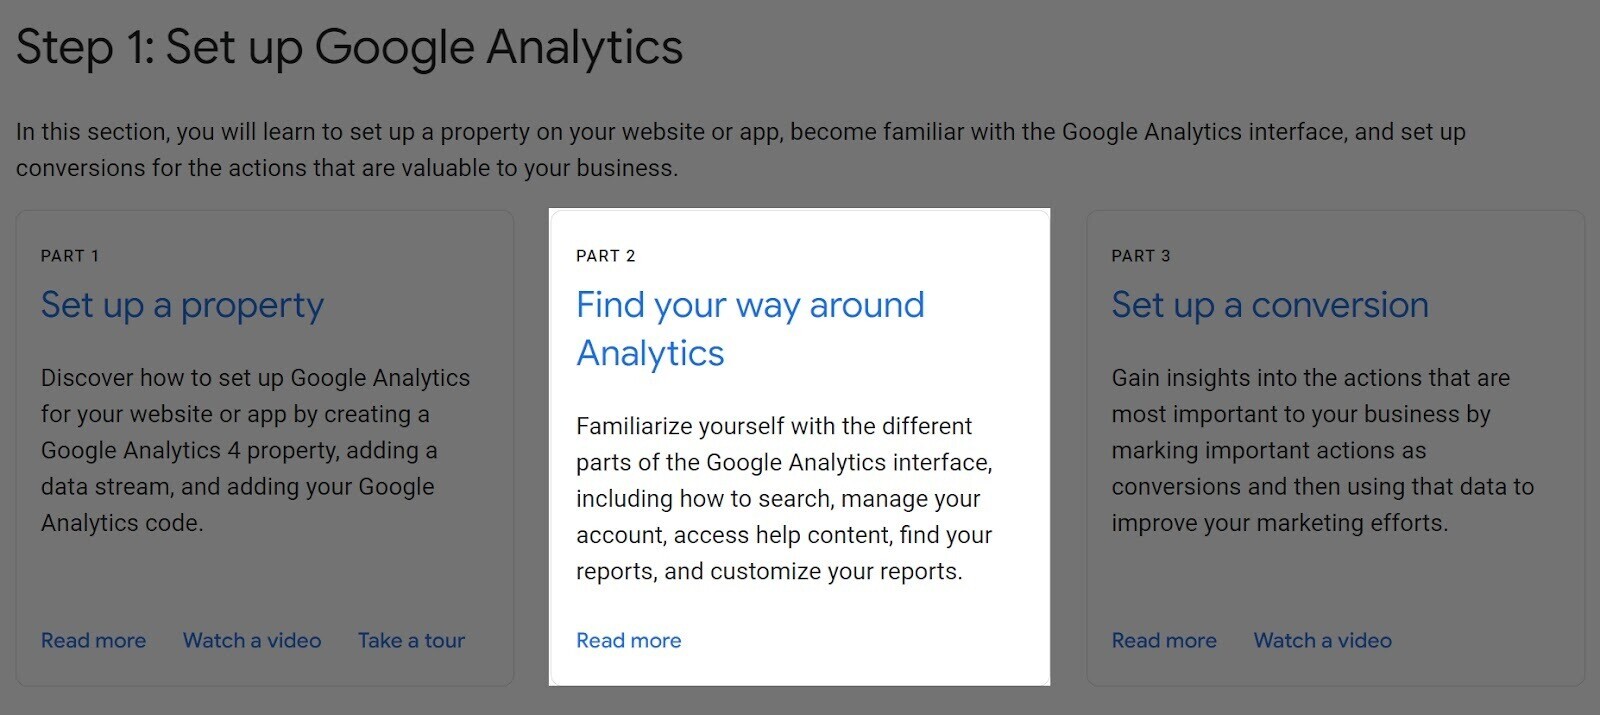 “Find your way around Analytics” tutorial highlighted